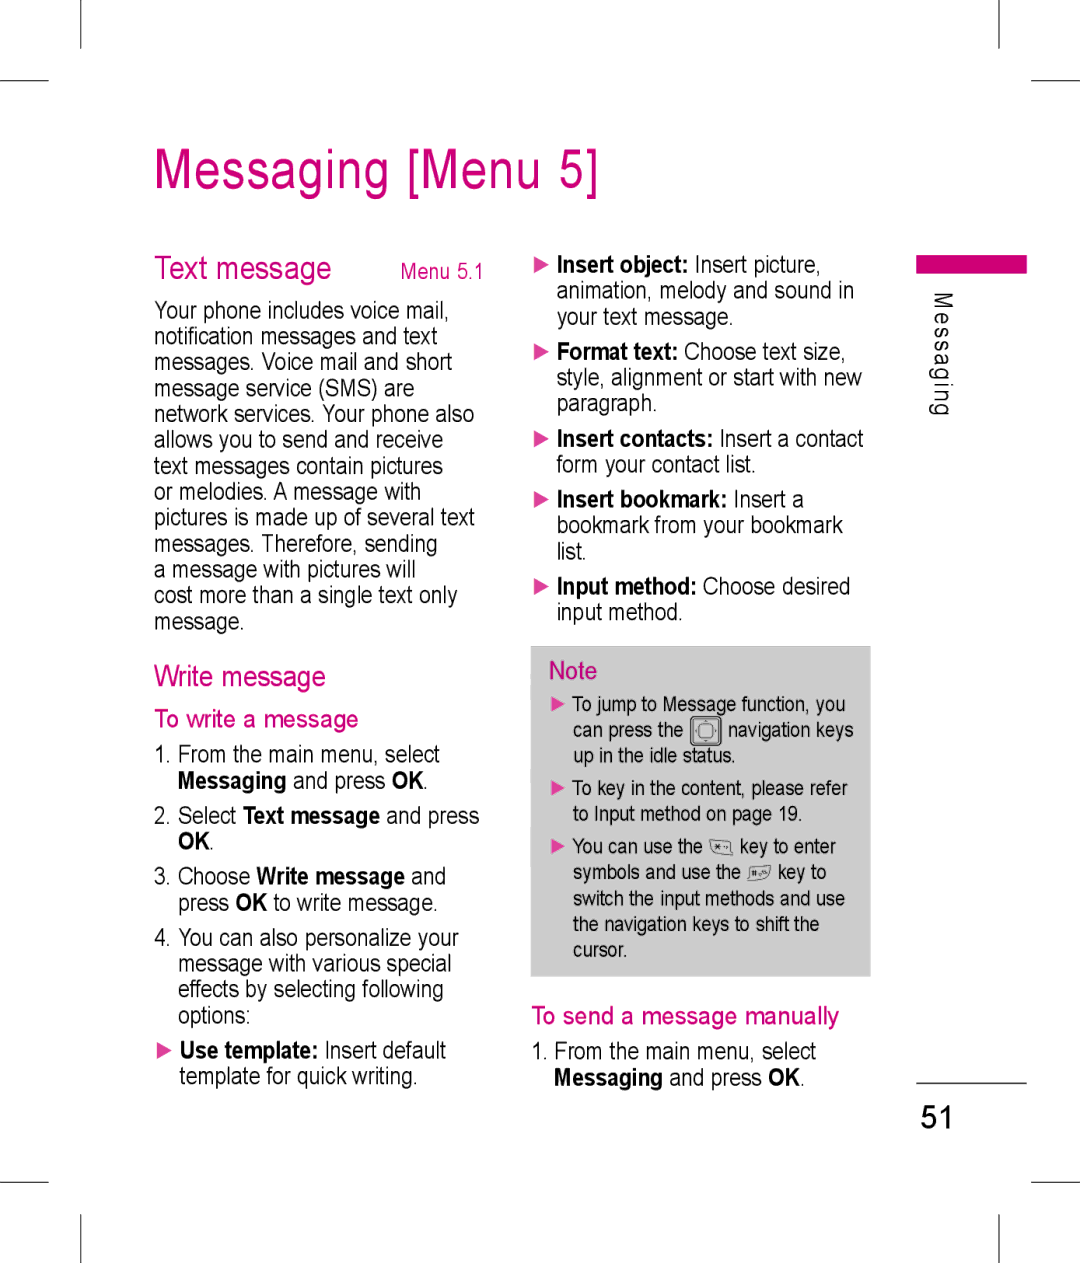 LG Electronics KP199 Messaging Menu, Text message, Write message, To write a message, To send a message manually 